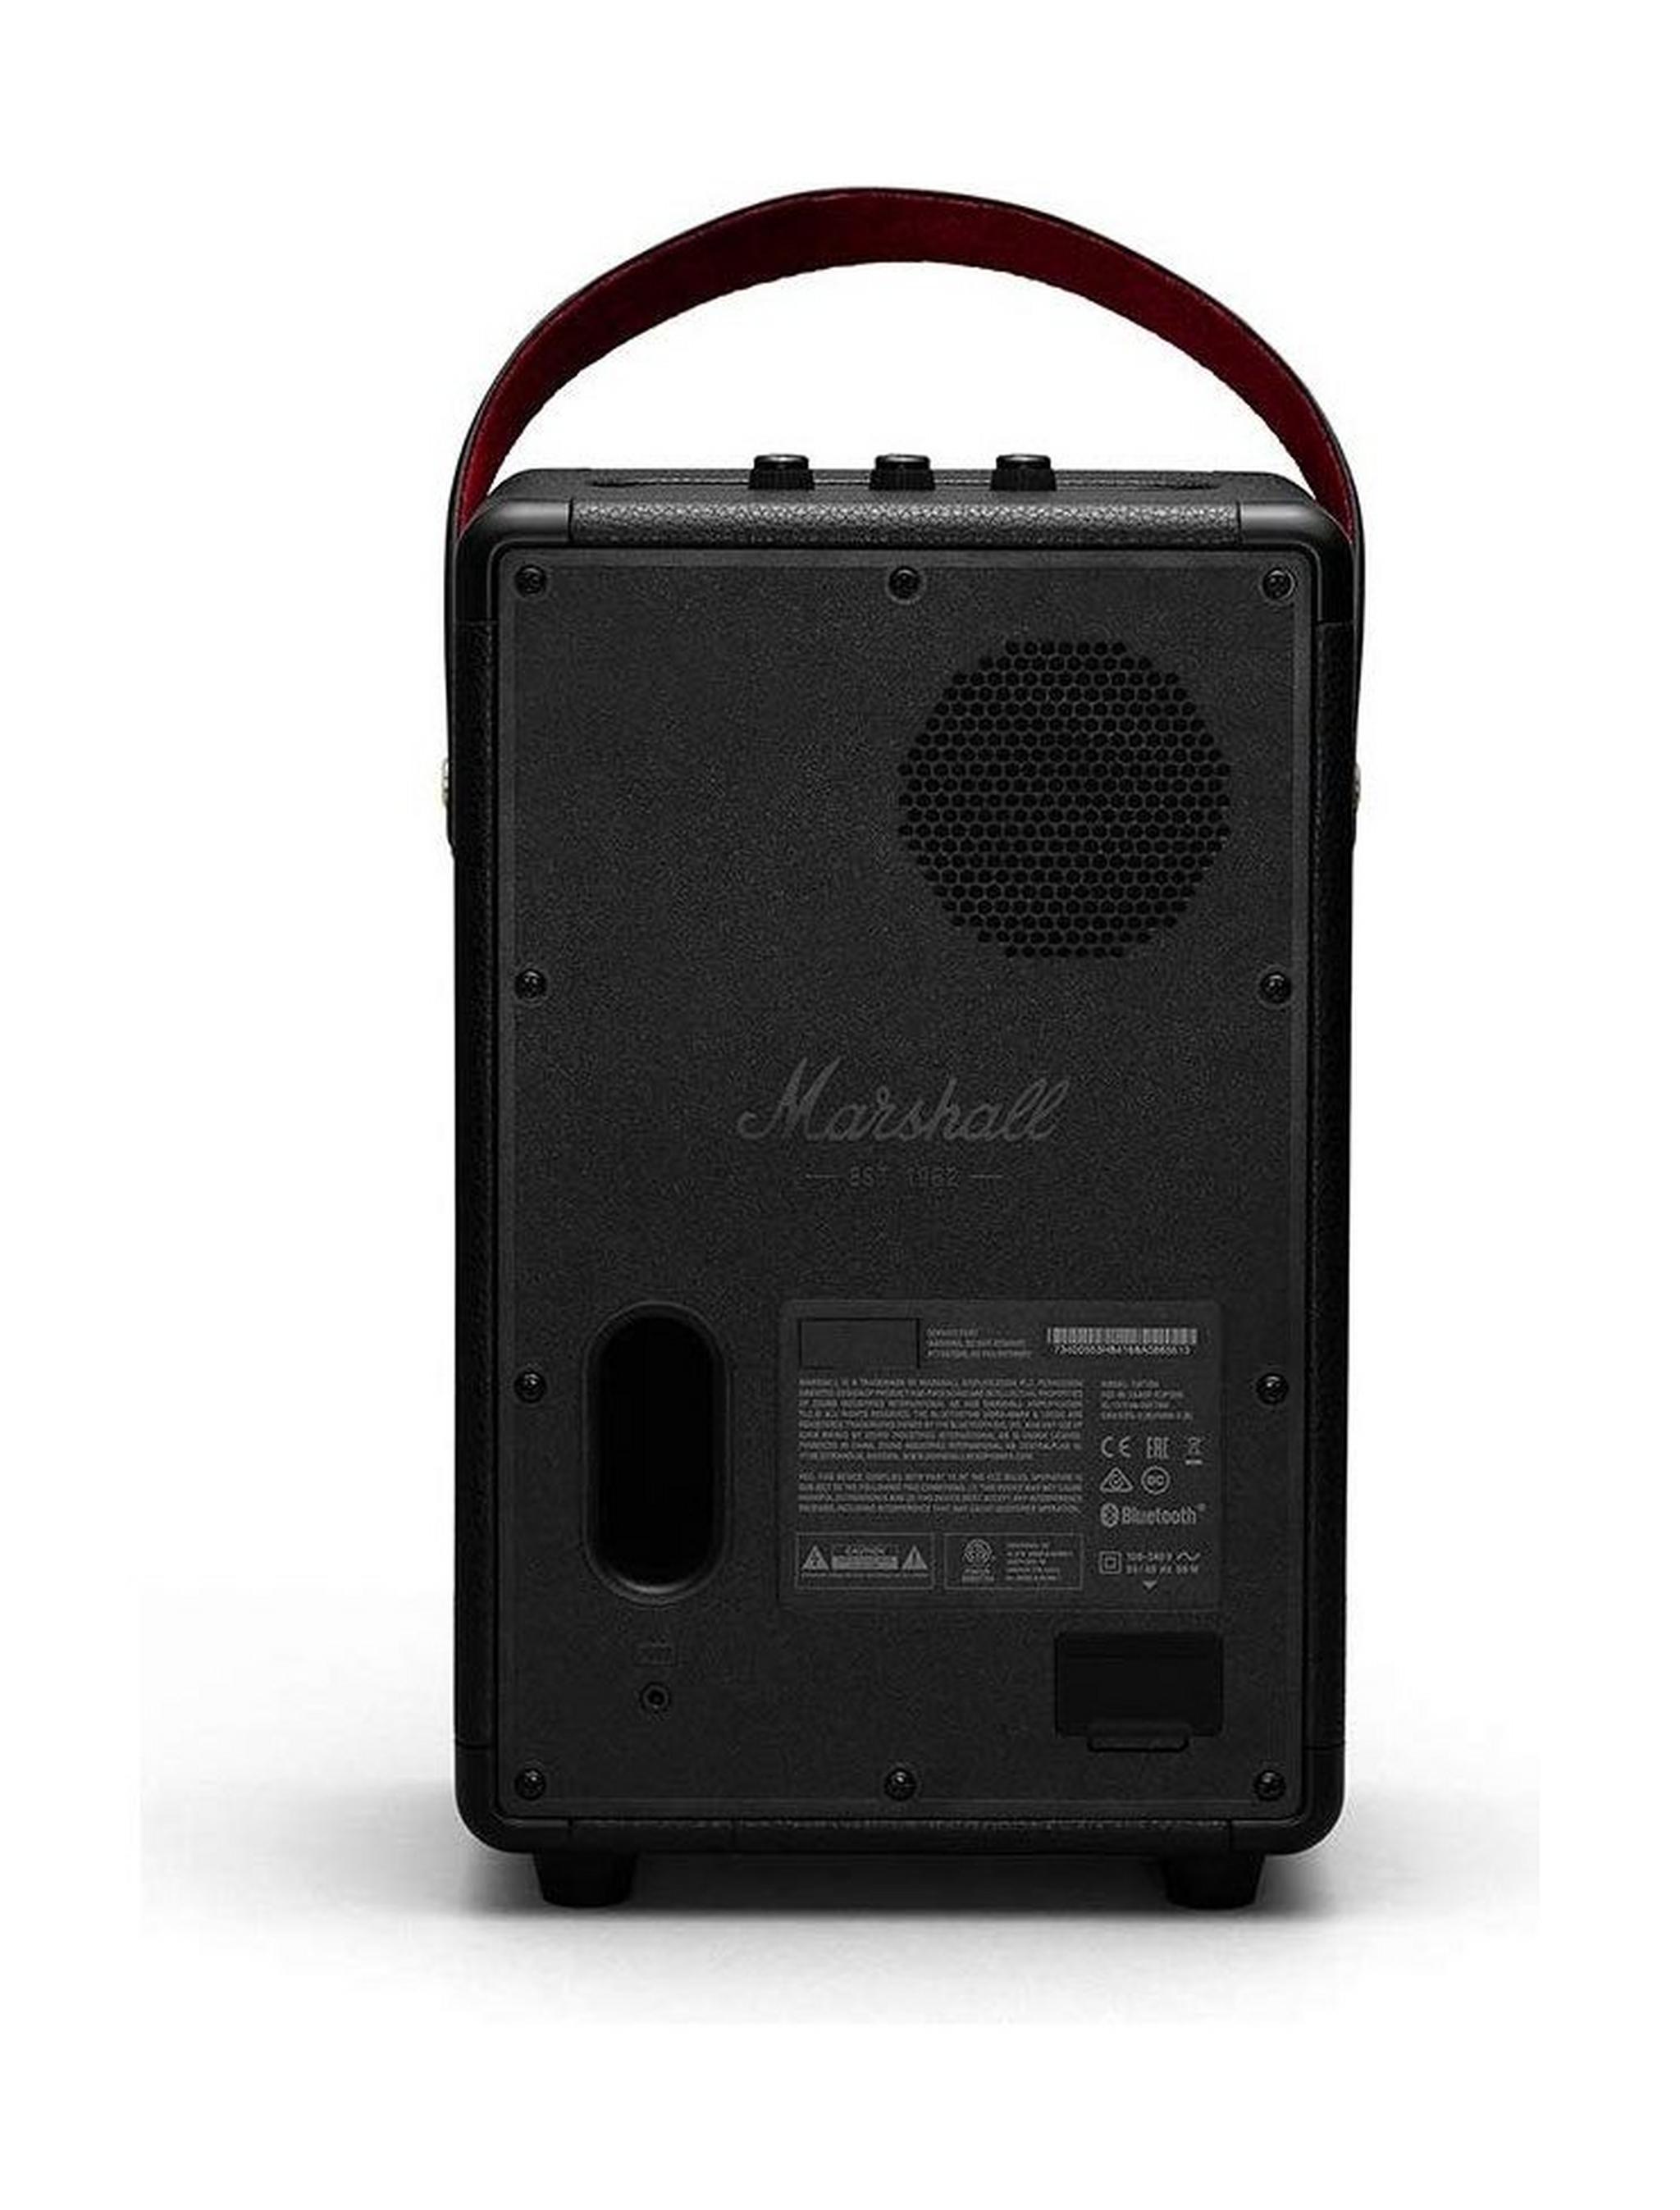 مكبر الصوت مارشال تيوفتون المحمول بتقنية البلوتوث - أسود